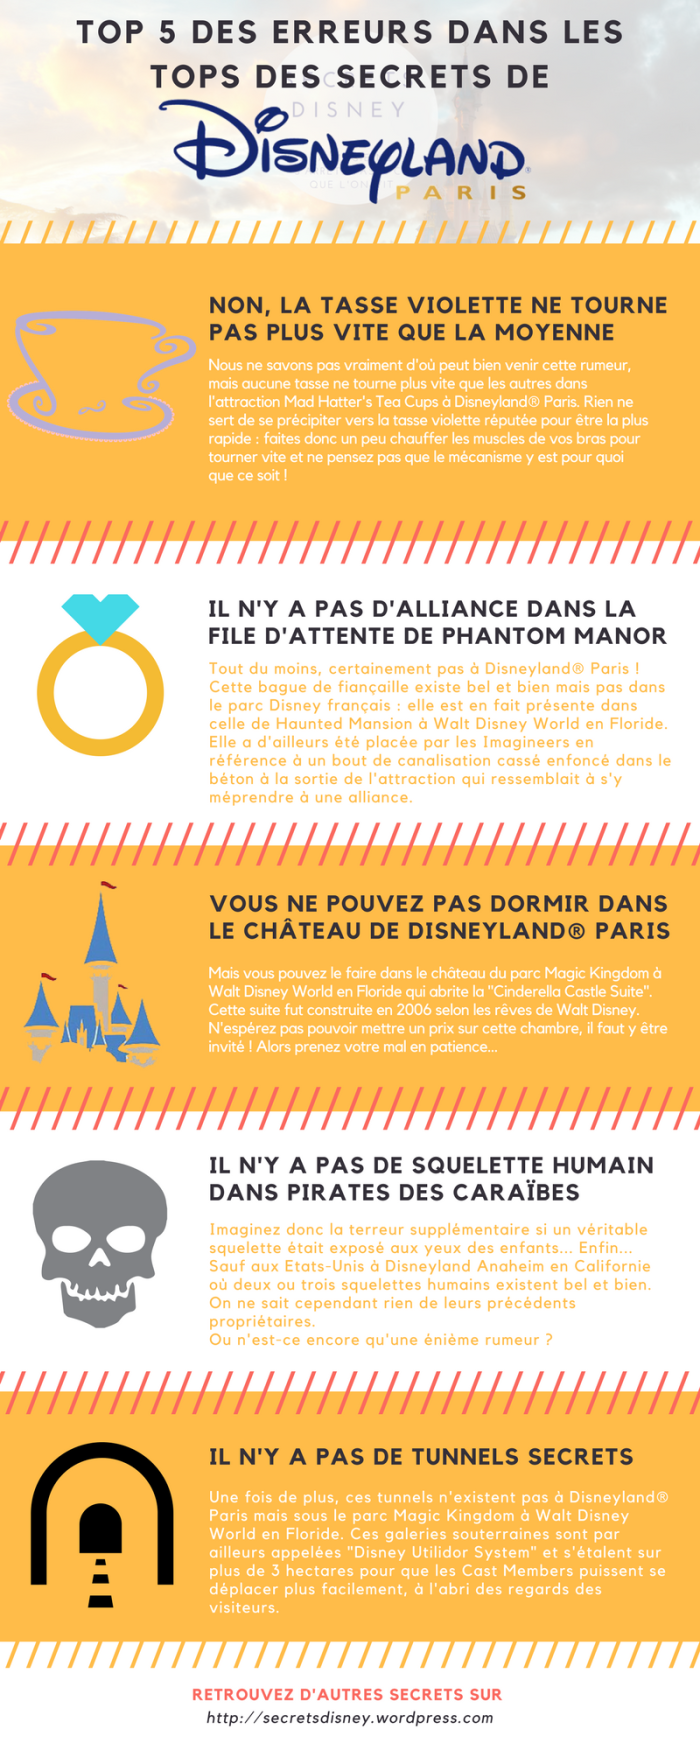 62 - Secrets Disney - Les Secrets et Détails de Disneyland Paris [Blog]  Top-5-des-erreurs-dans-les-tops-des-secrets-de